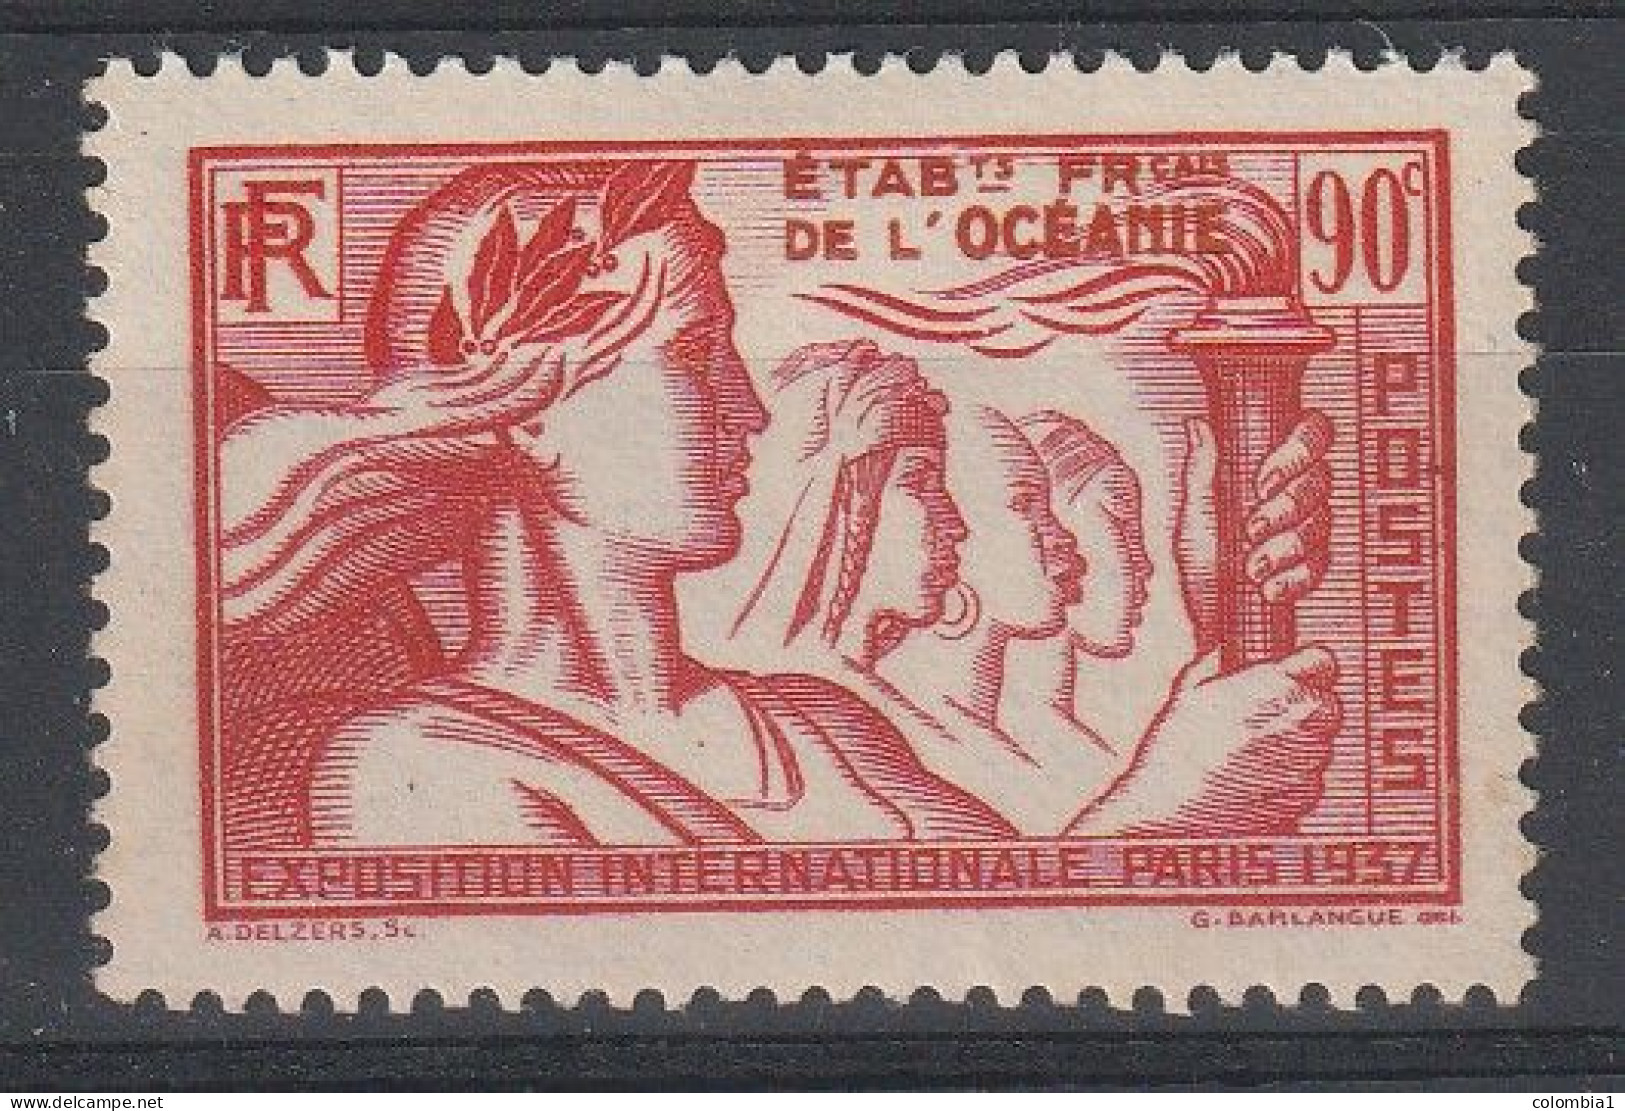 OCEANIE YT 124 Neuf ** - Unused Stamps